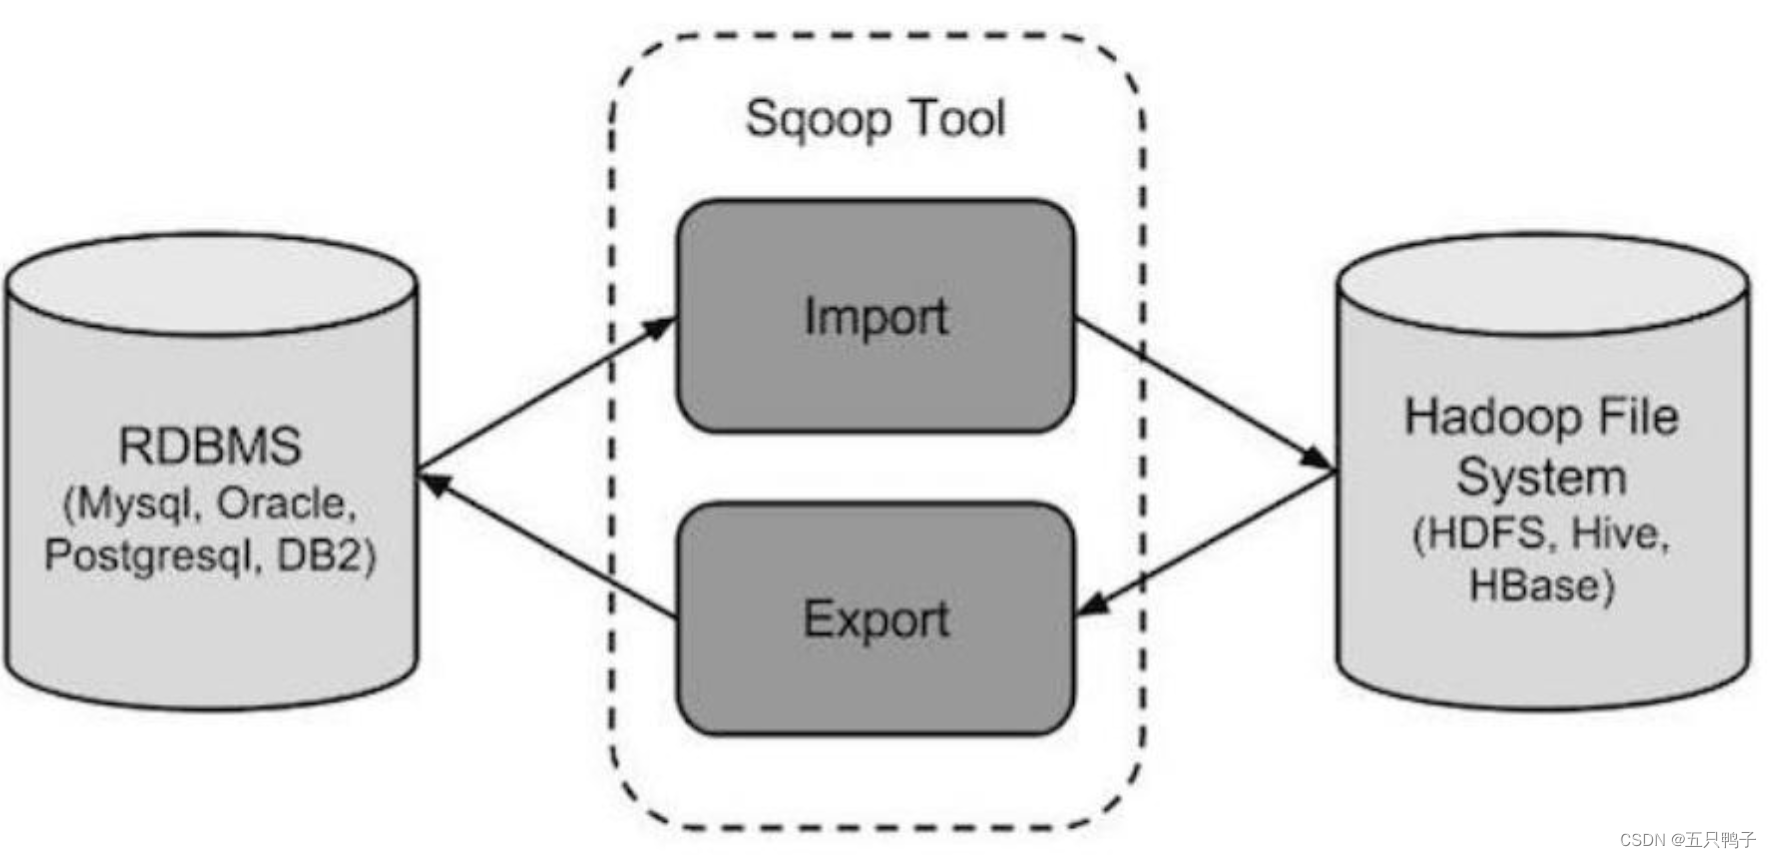 sqoop flow chart